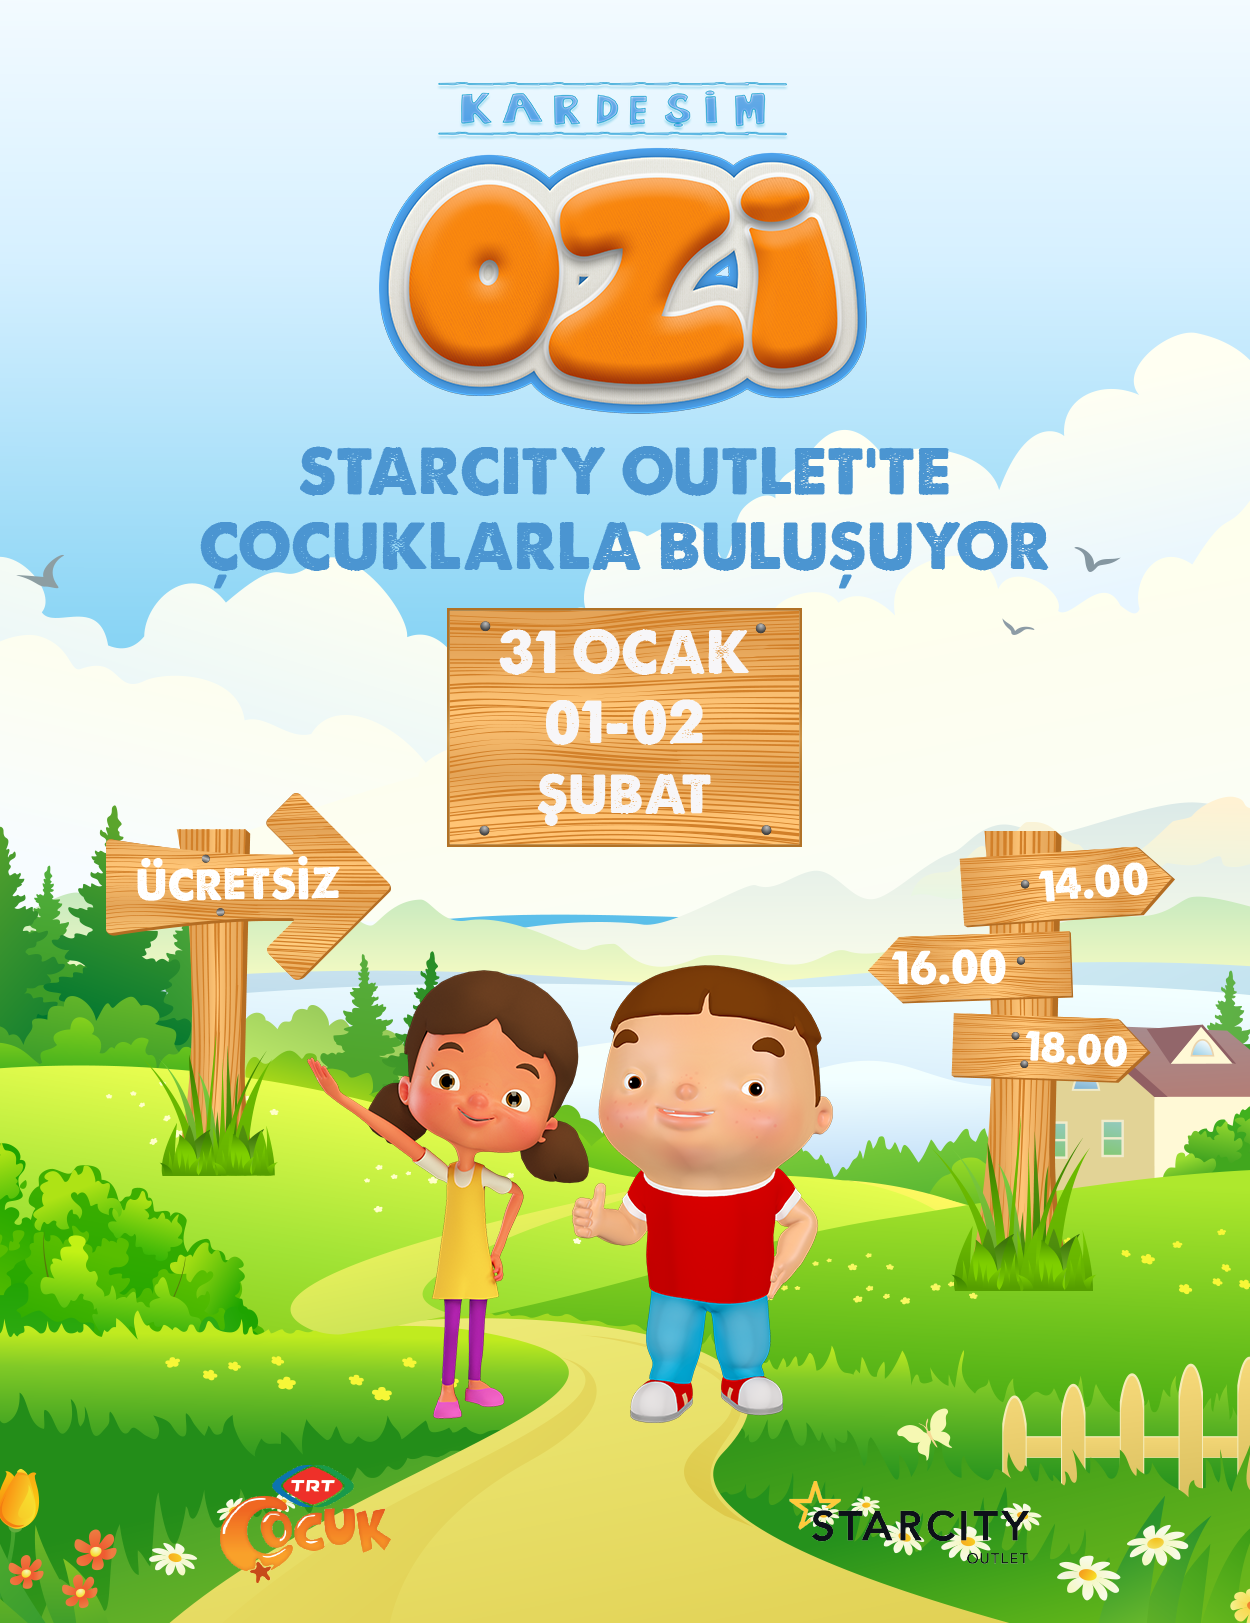 "KARDEŞİM OZİ" STARCITY OUTLET’E GELİYOR !